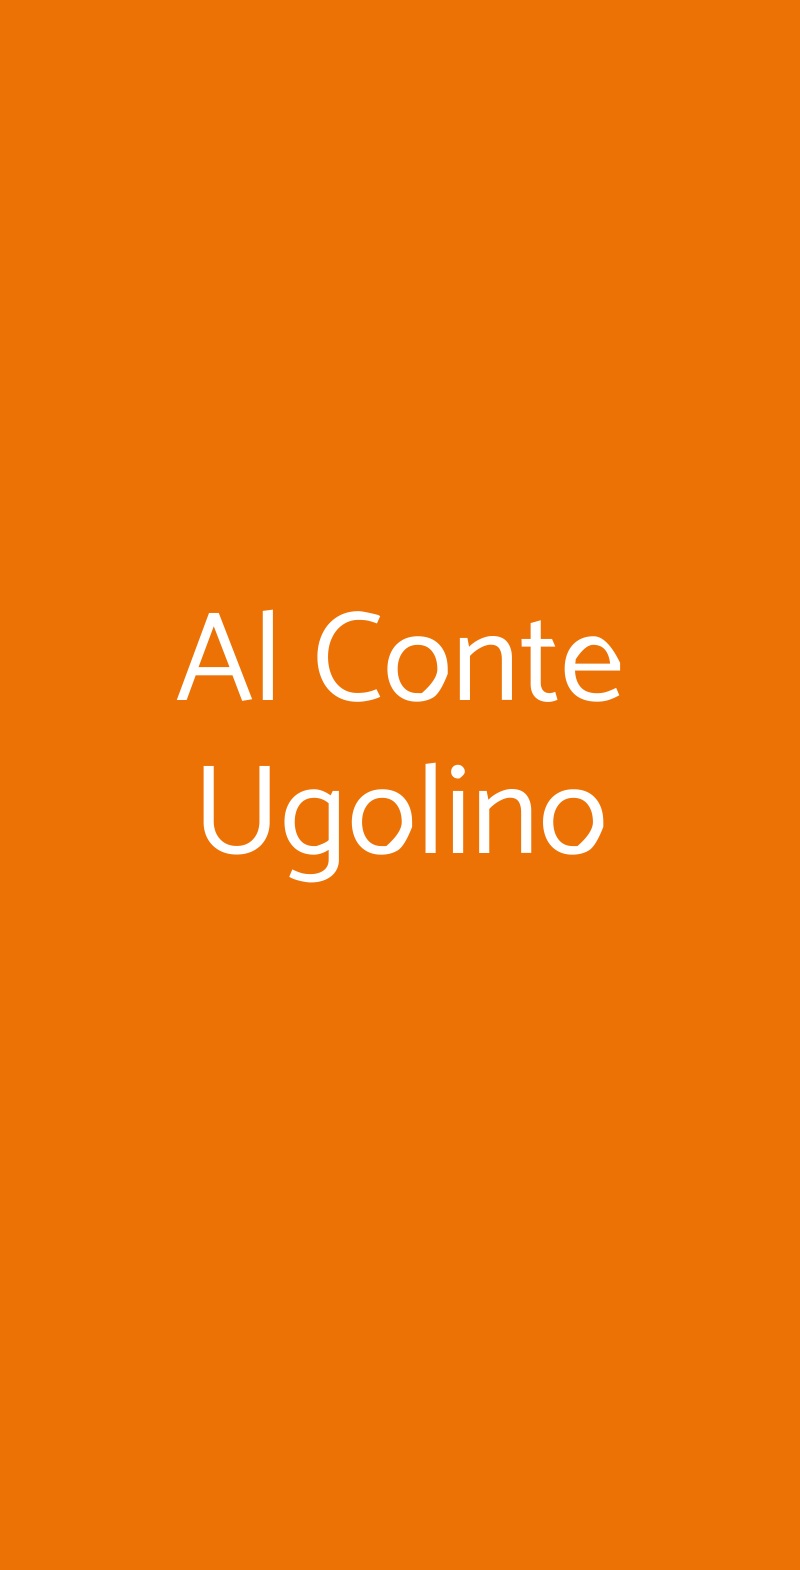 Al Conte Ugolino Milano menù 1 pagina